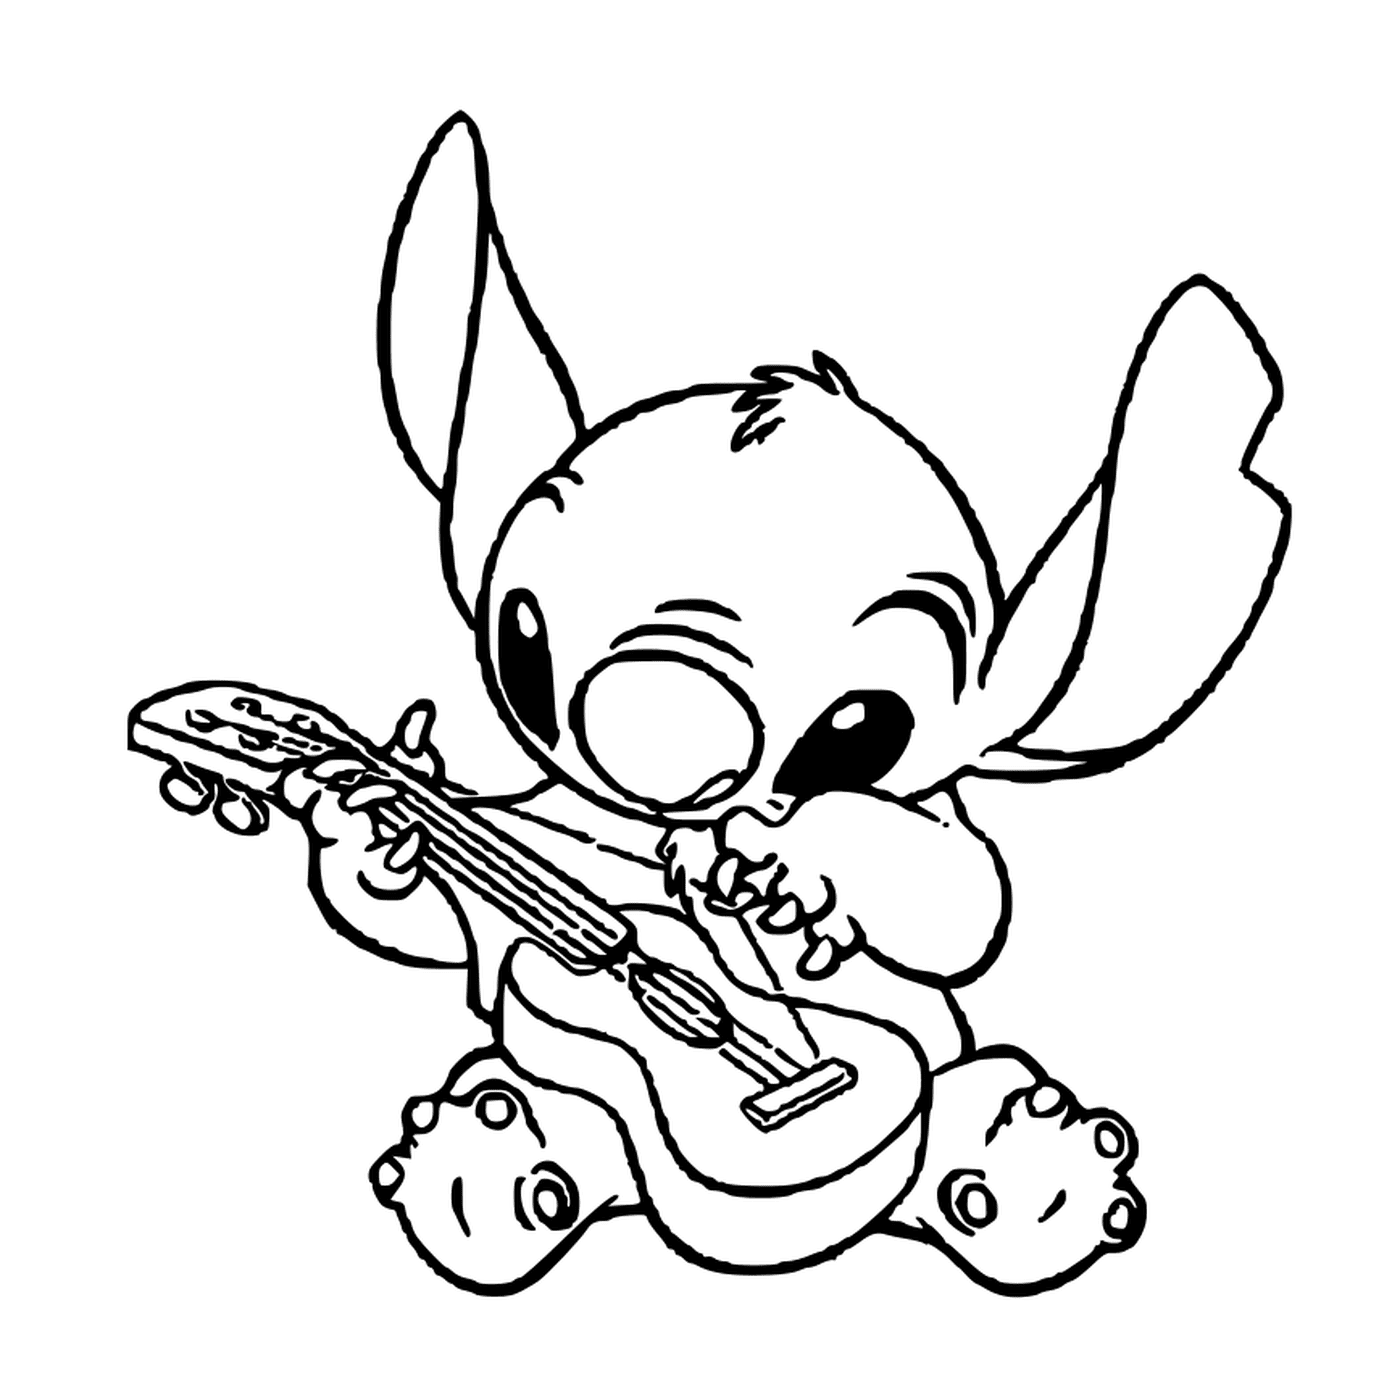  Stitch suona la chitarra 